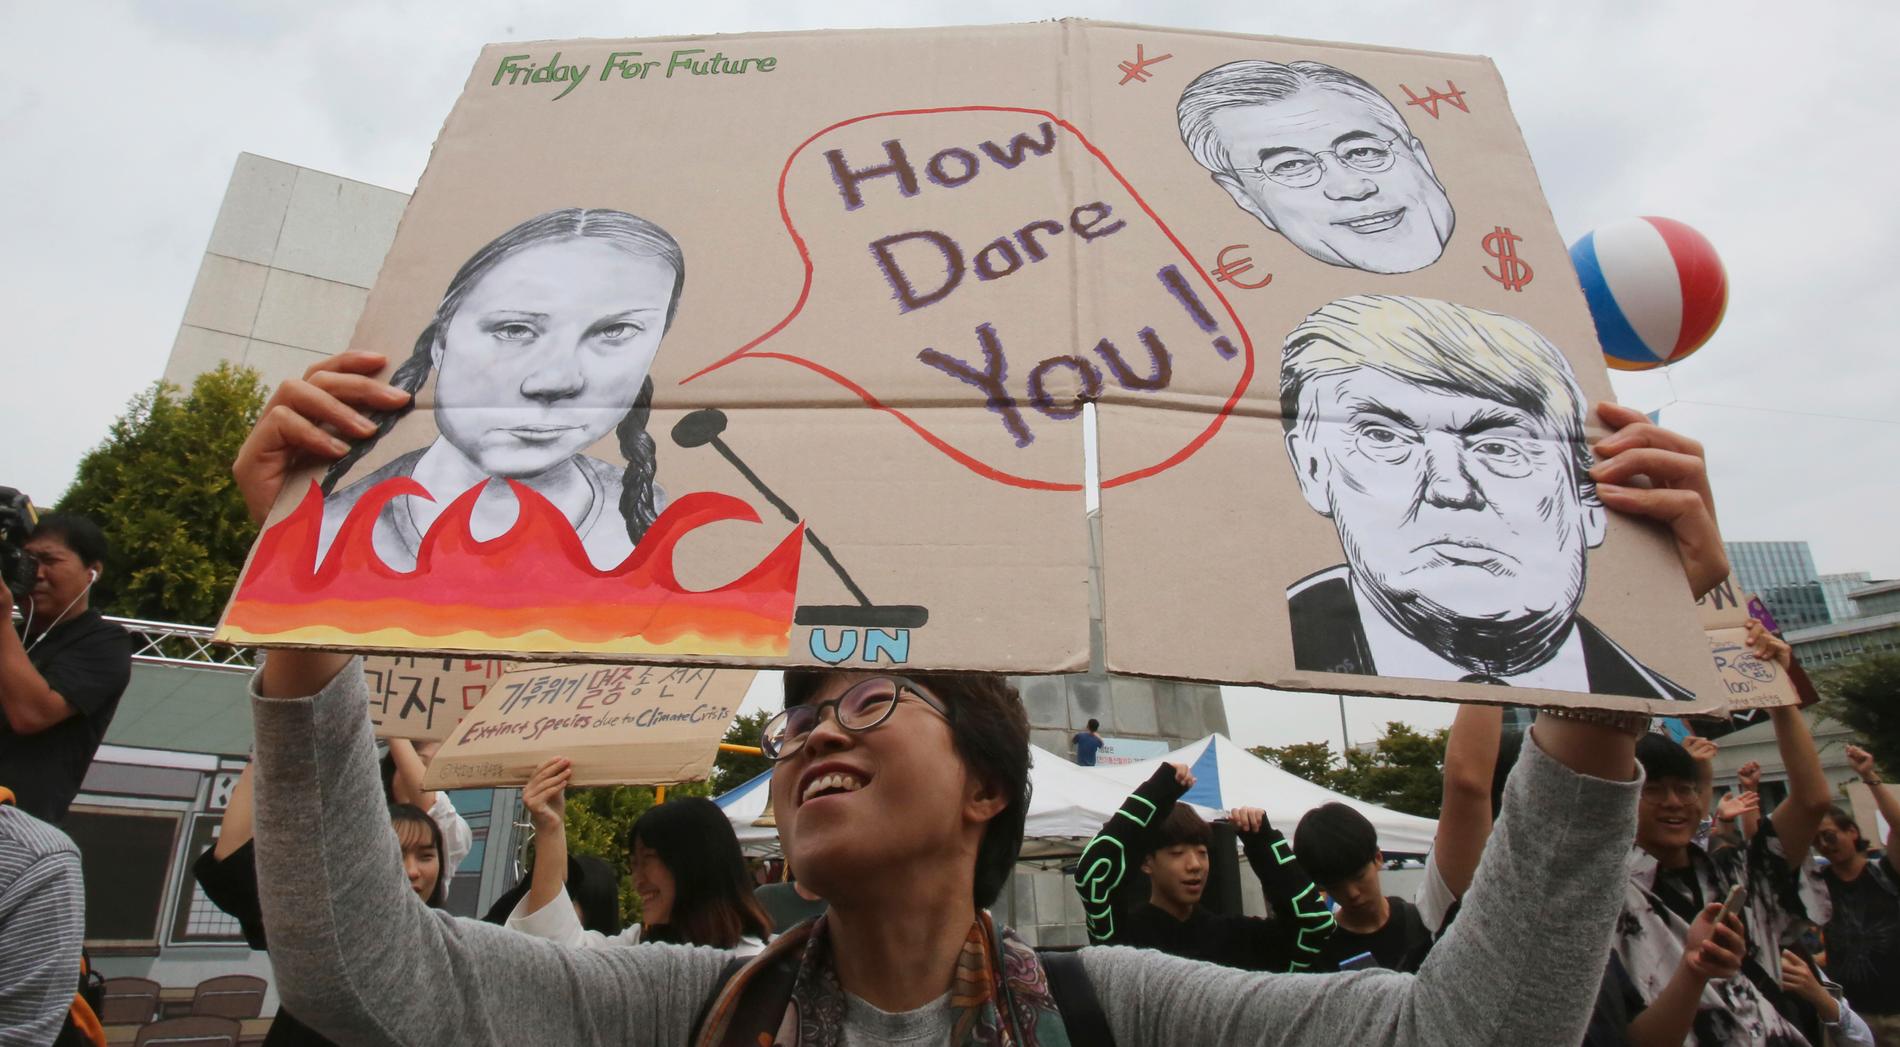 ”How dare you” syntes på många skyltar världen över under fredagens klimatdemonstration.